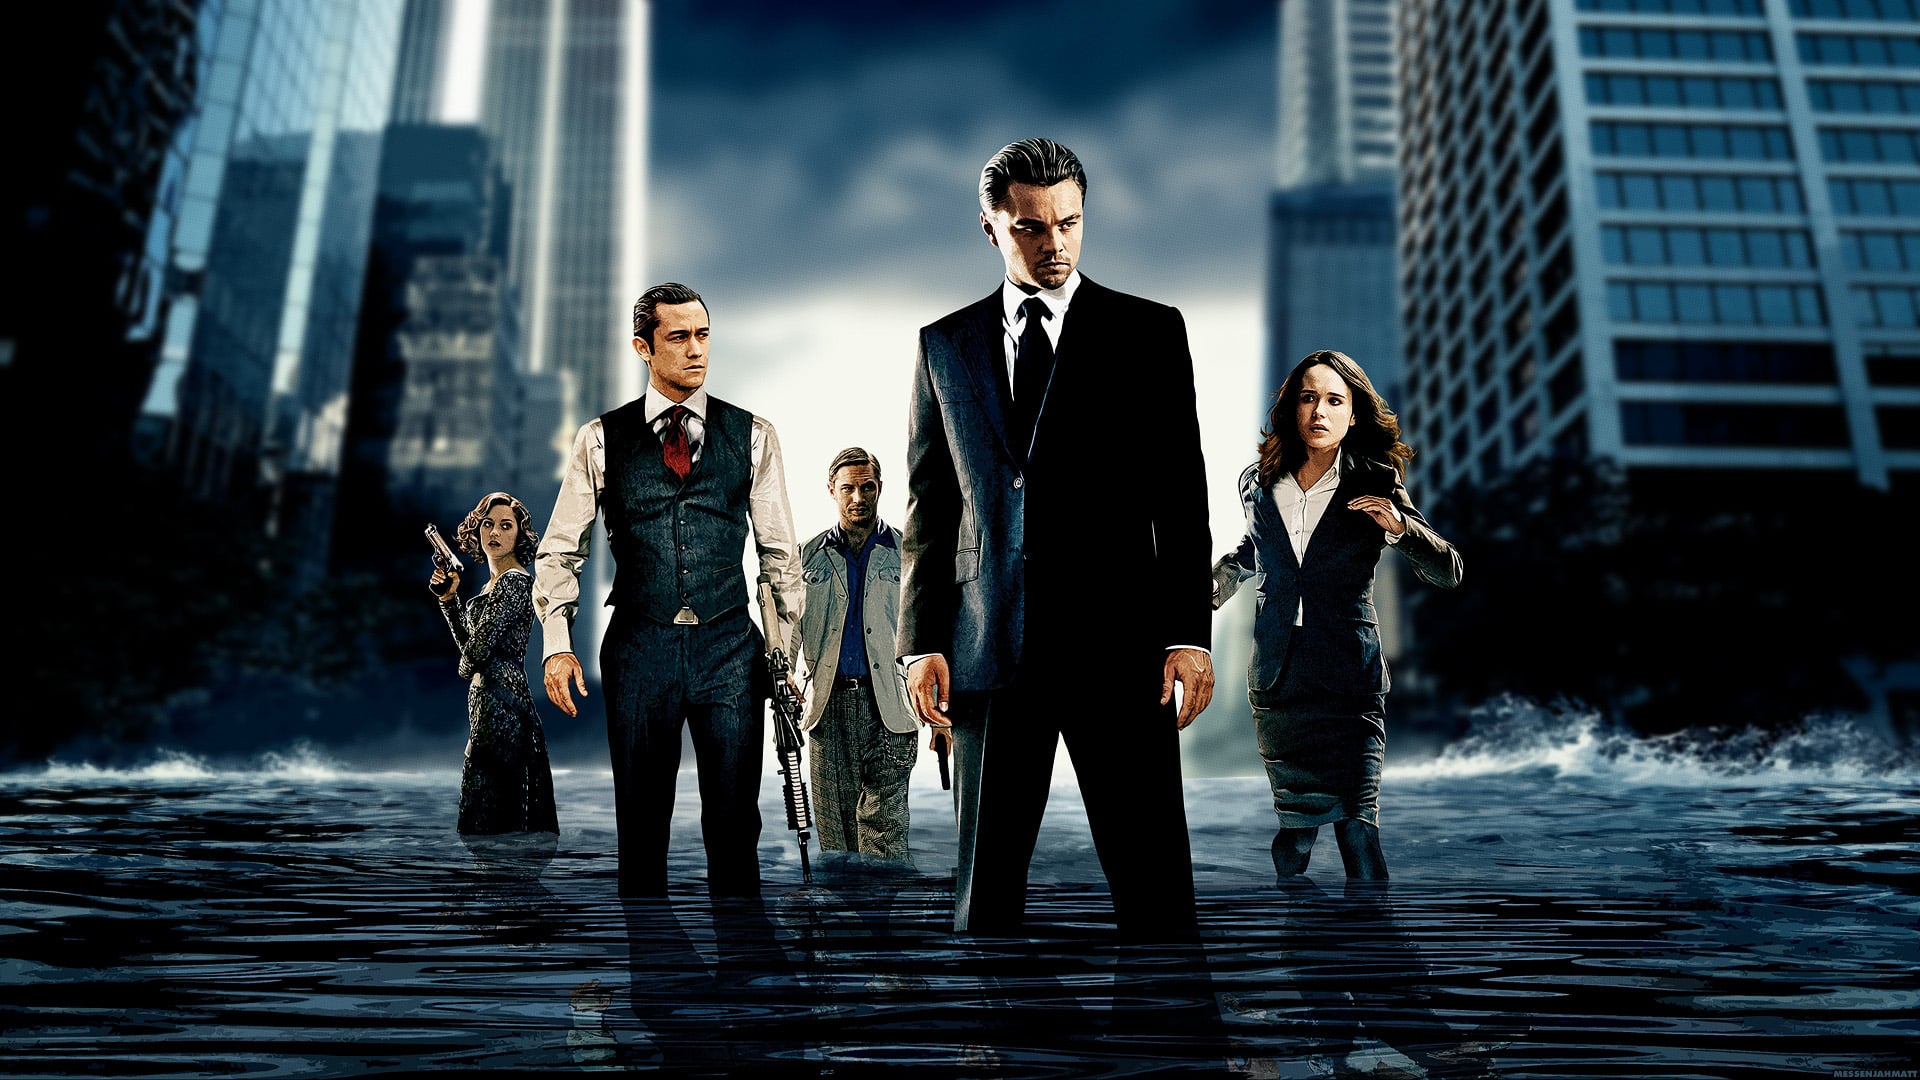 Tenet di Christopher Nolan è il sequel di Inception, secondo alcuni fan